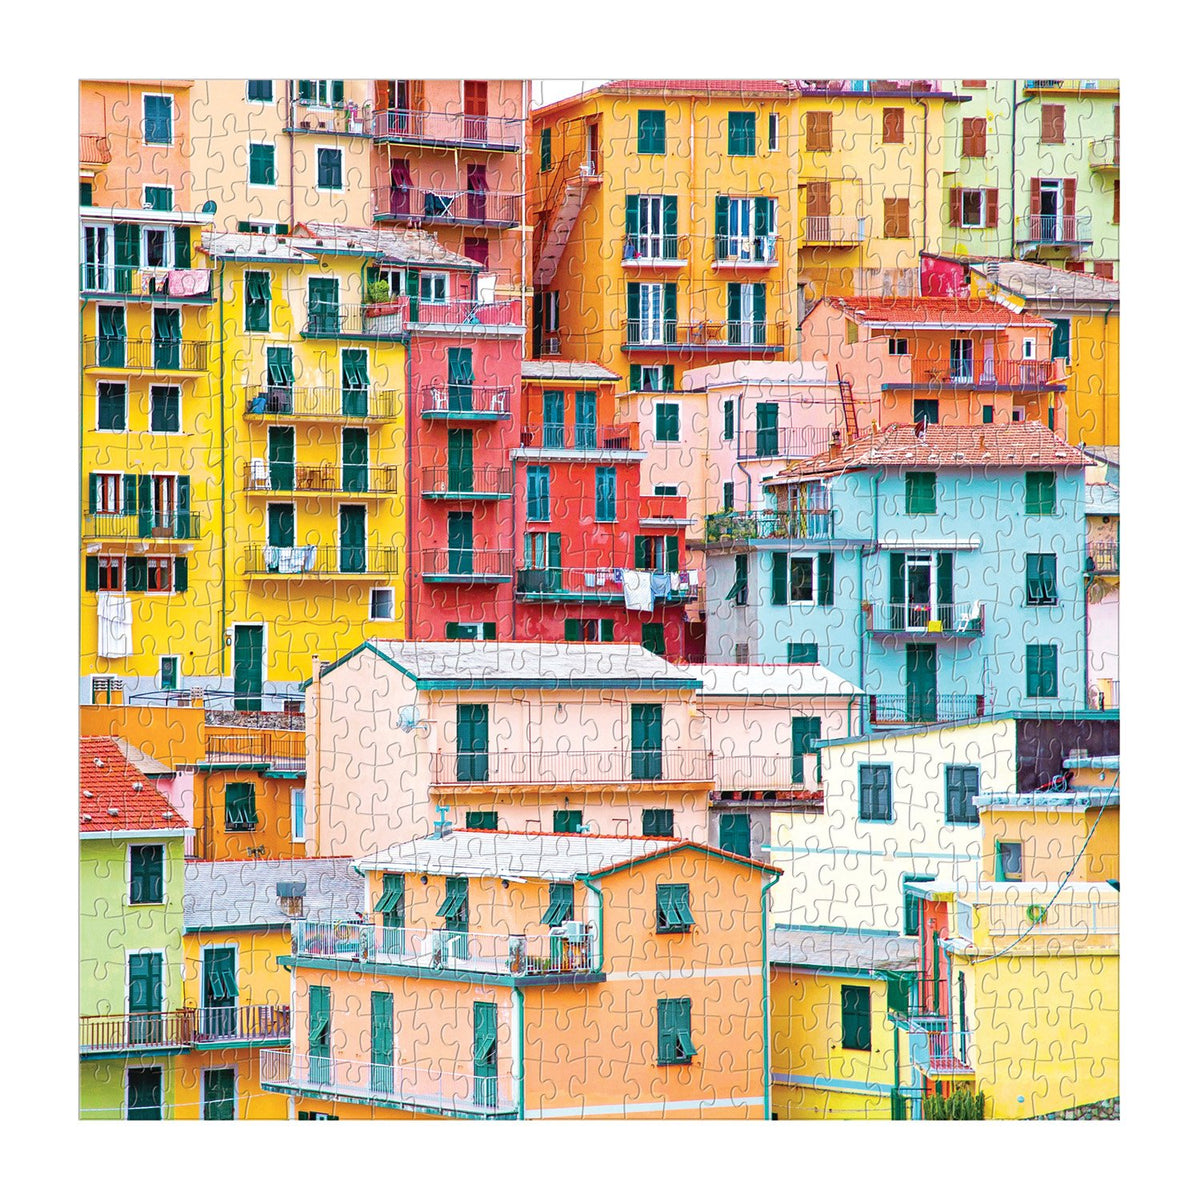 Ciao from Cinque Terre 500 Piece Puzzle 500 Piece Puzzles Galison 